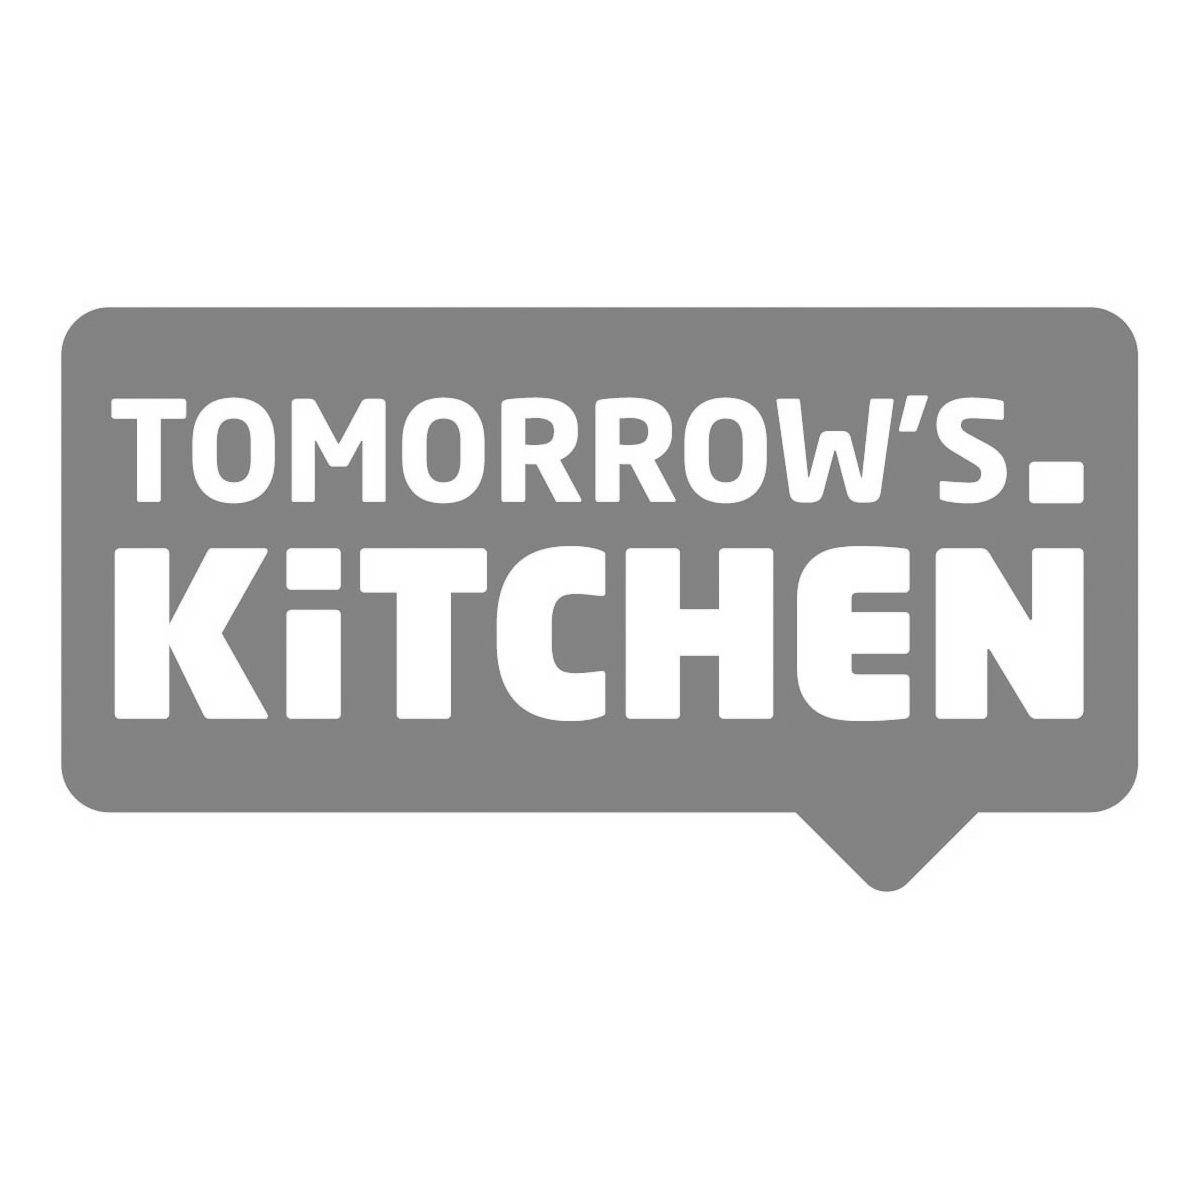 Tomorrow's Kitchen